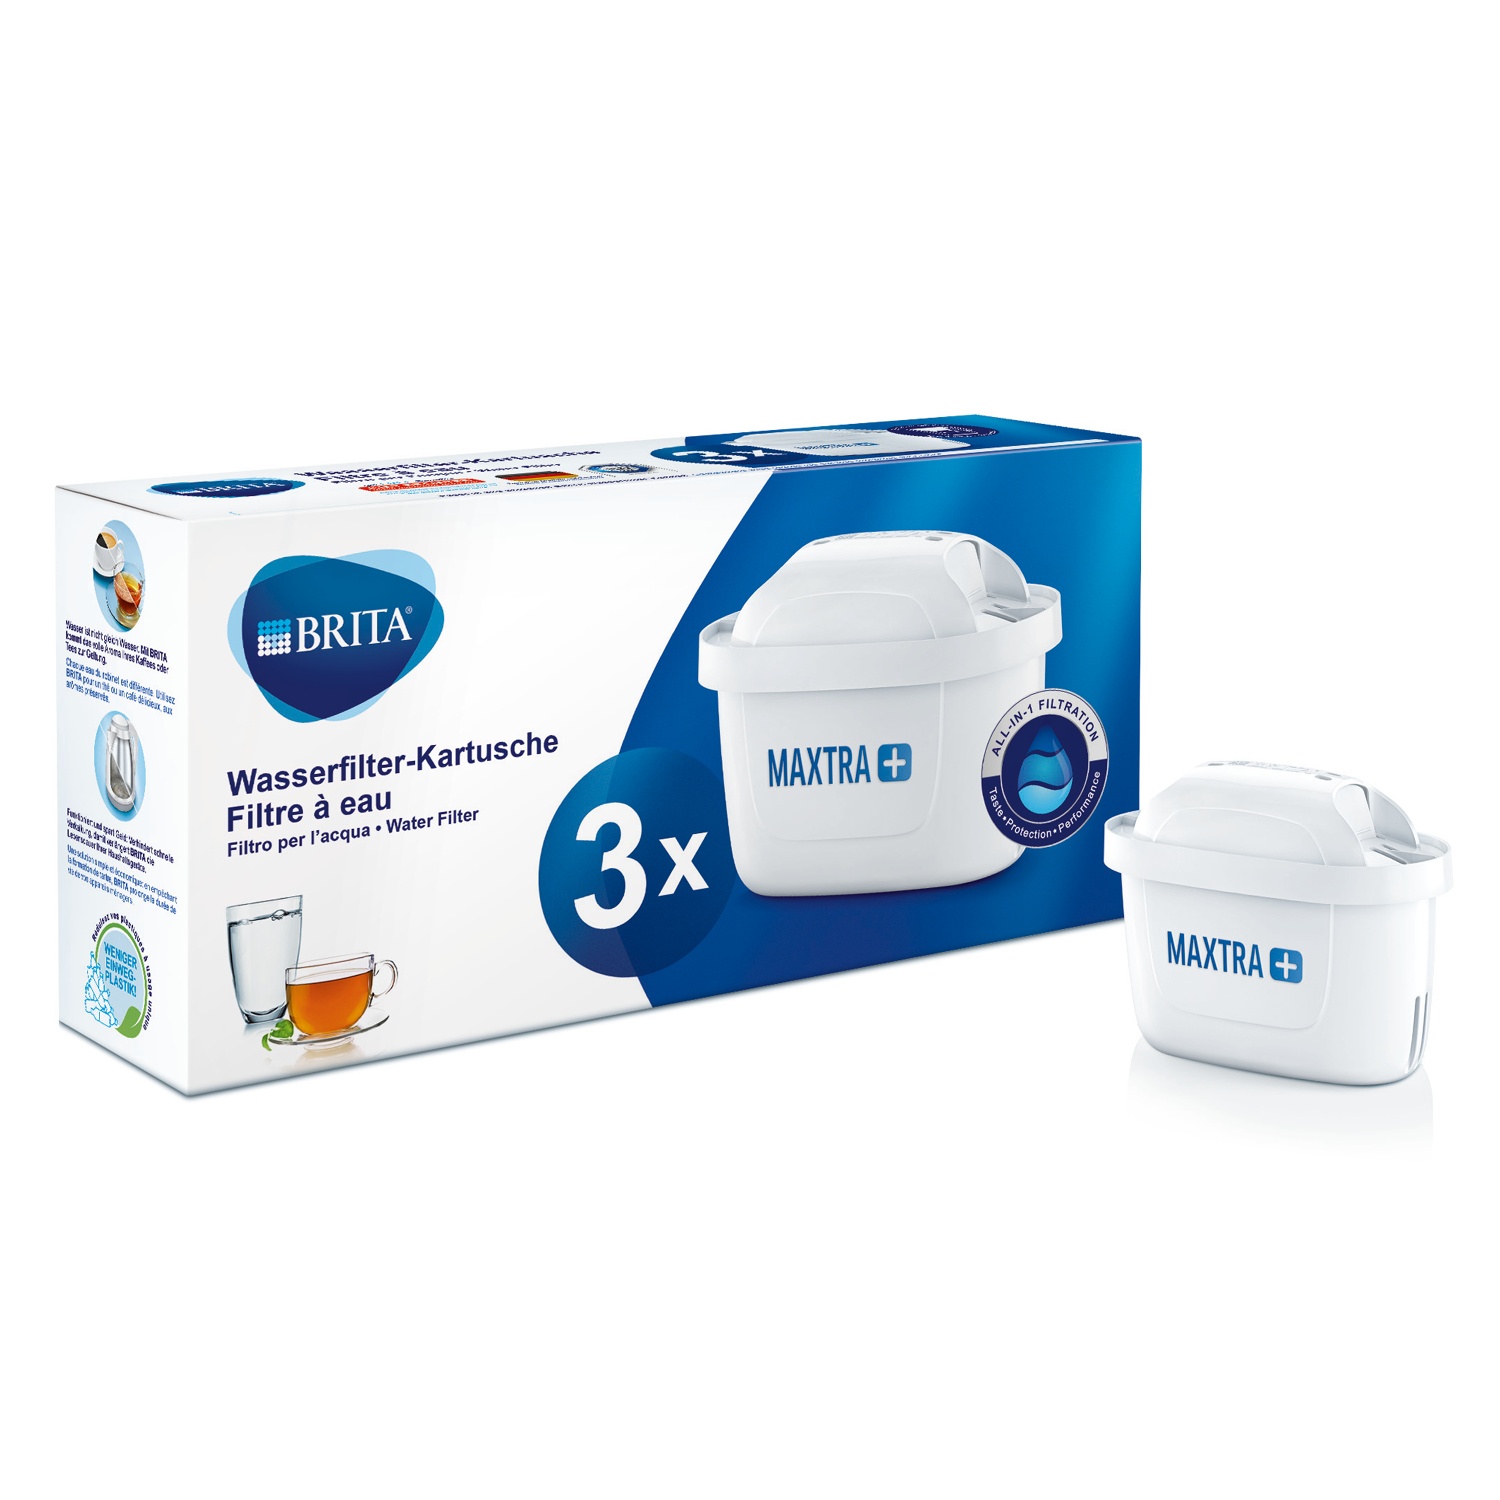 BRITA® Wasserfilter-Kartusche MAXTRA + Pack 3